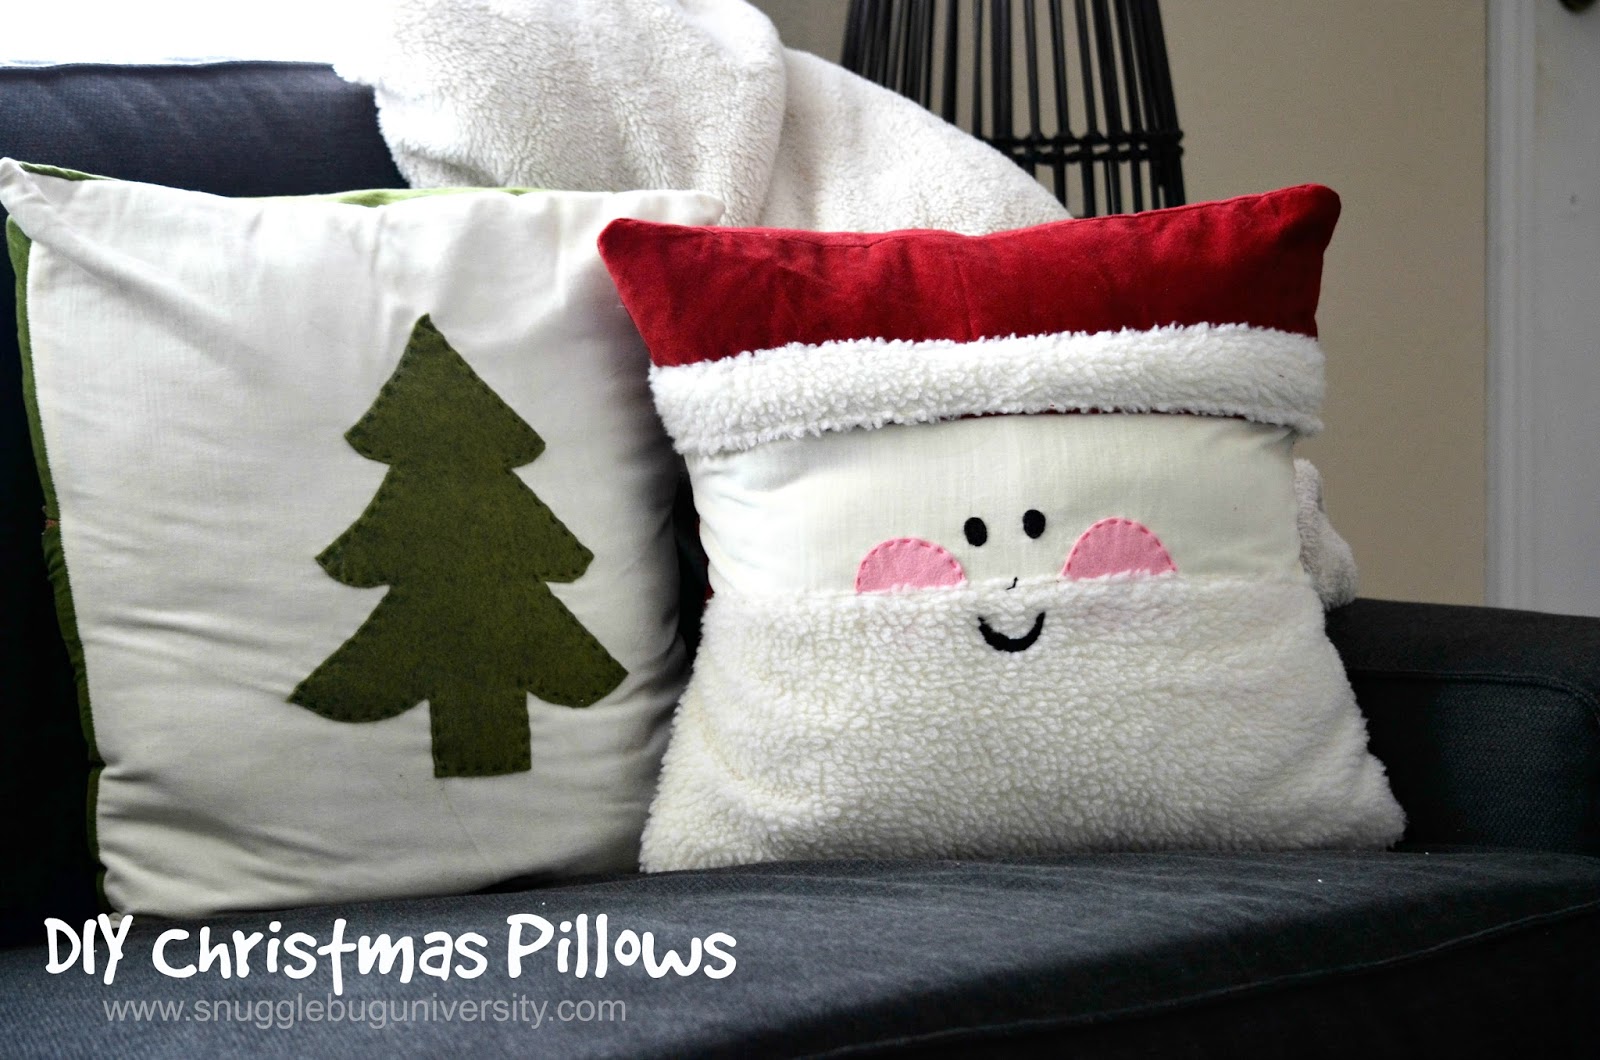 Snugglebug University: Easy Christmas Pillows